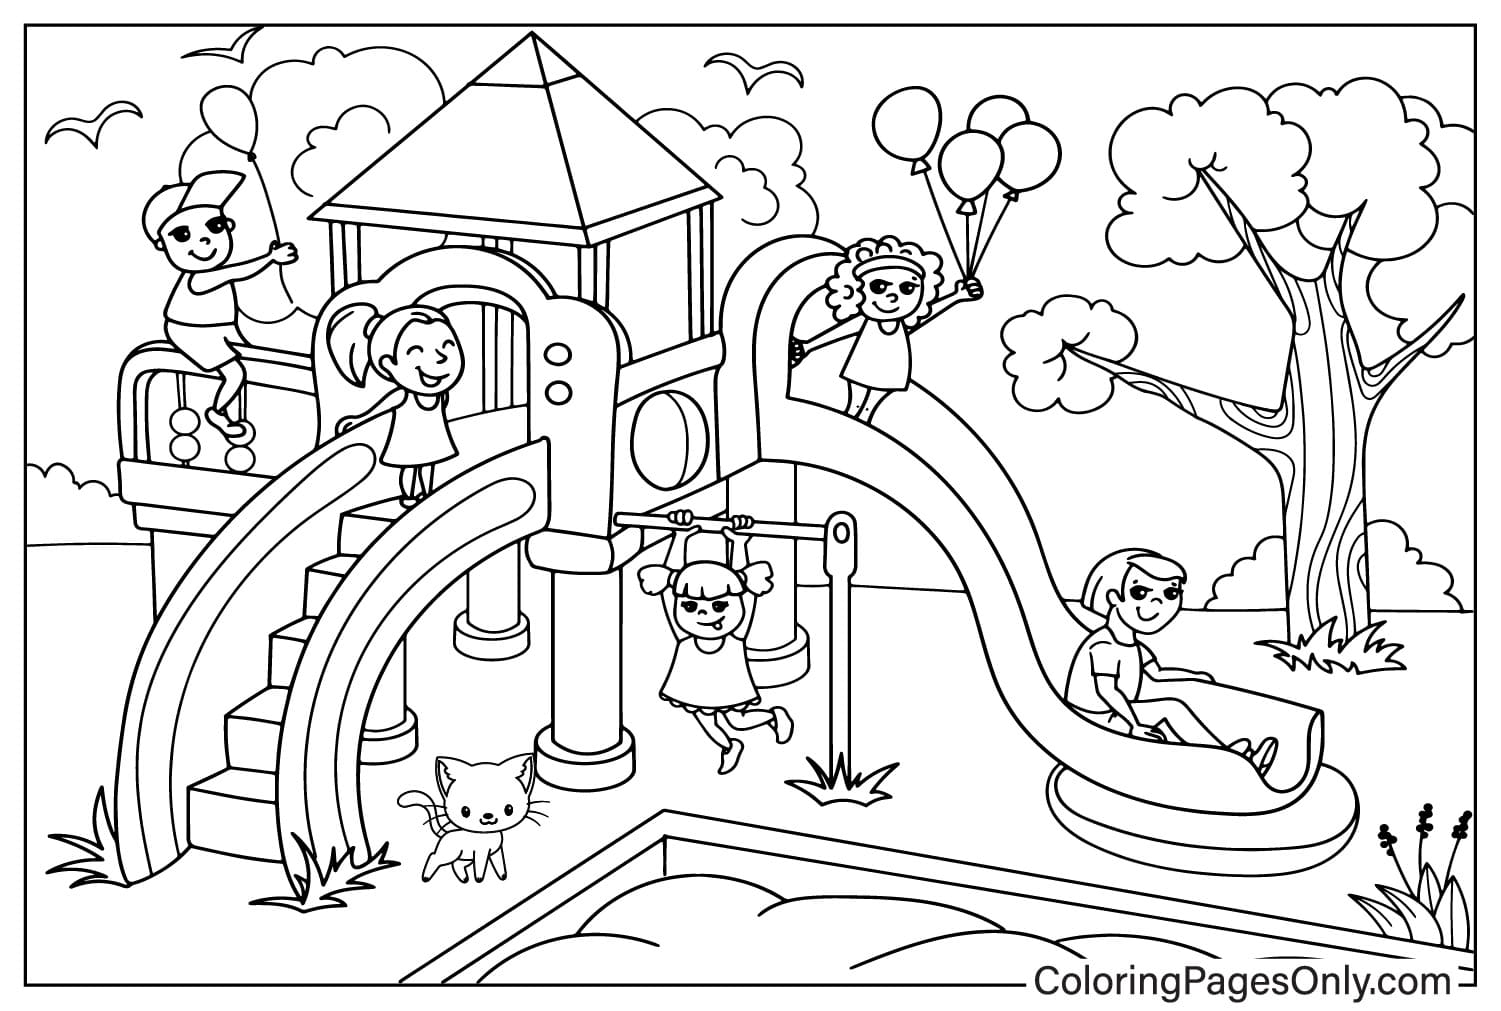 Folha para colorir do playground para crianças do playground